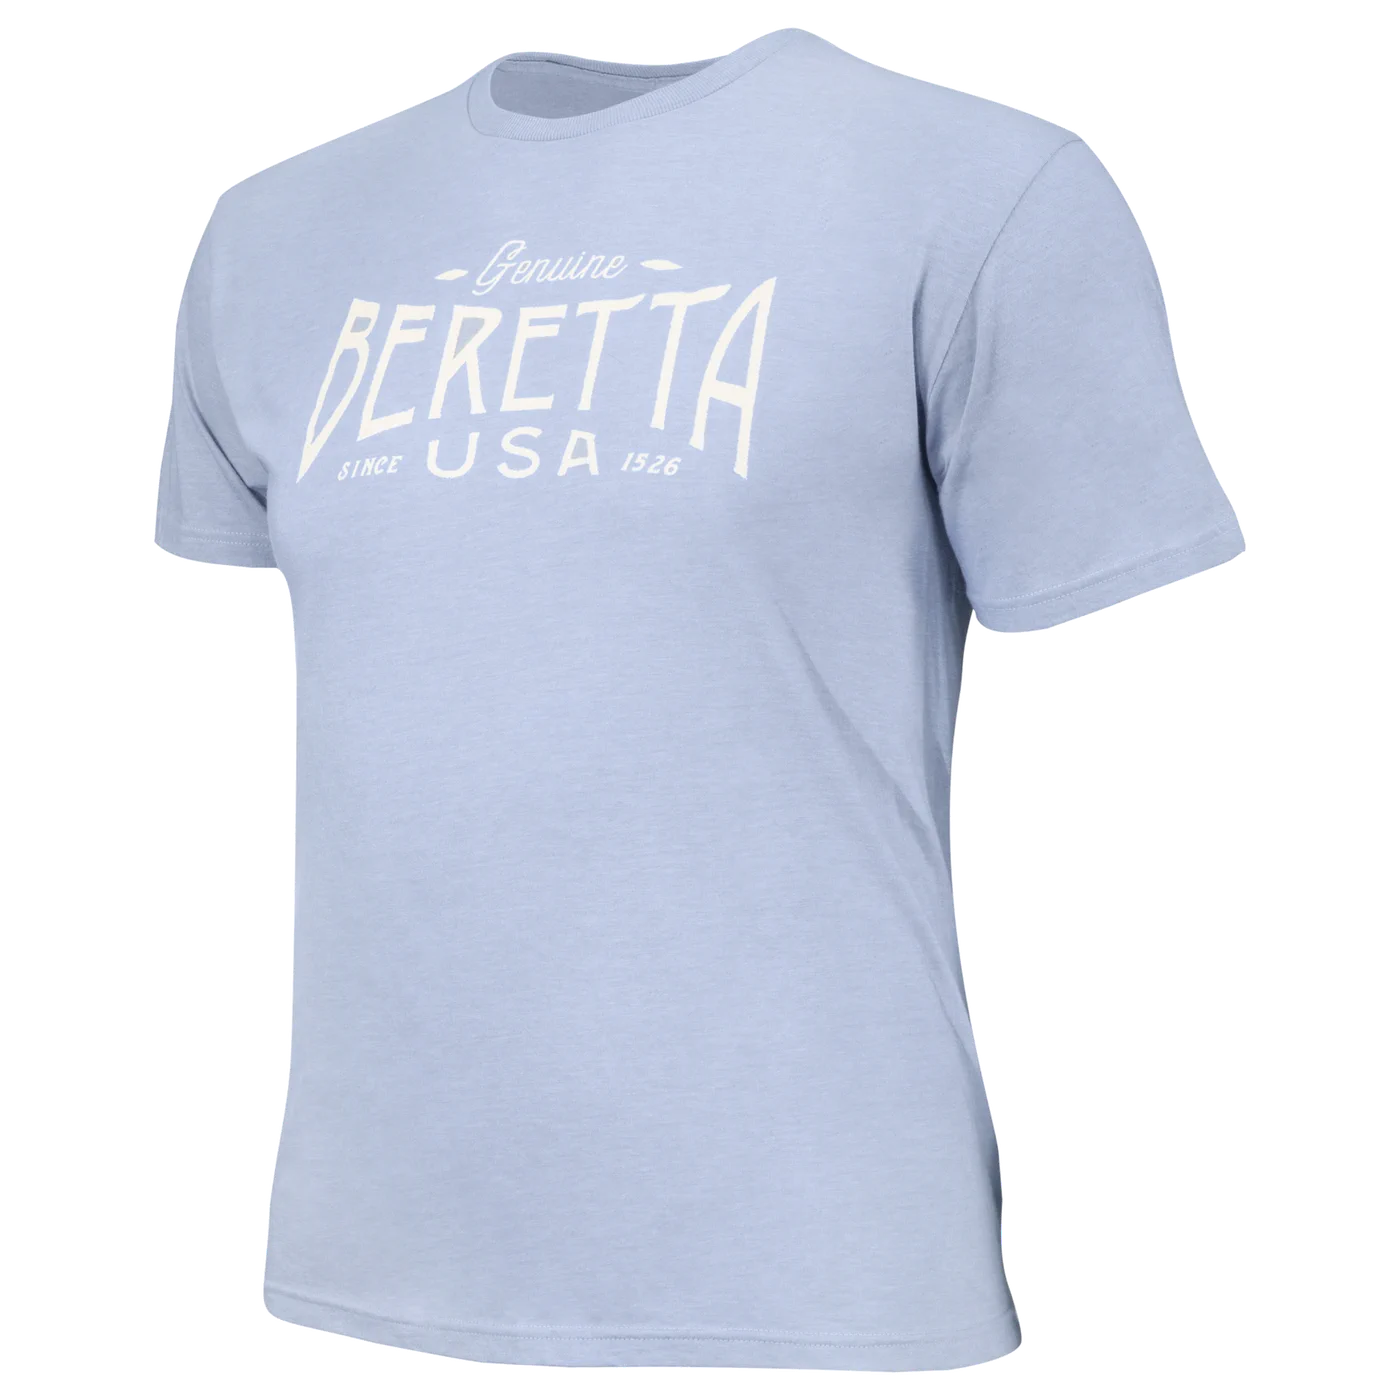 www.beretta.com